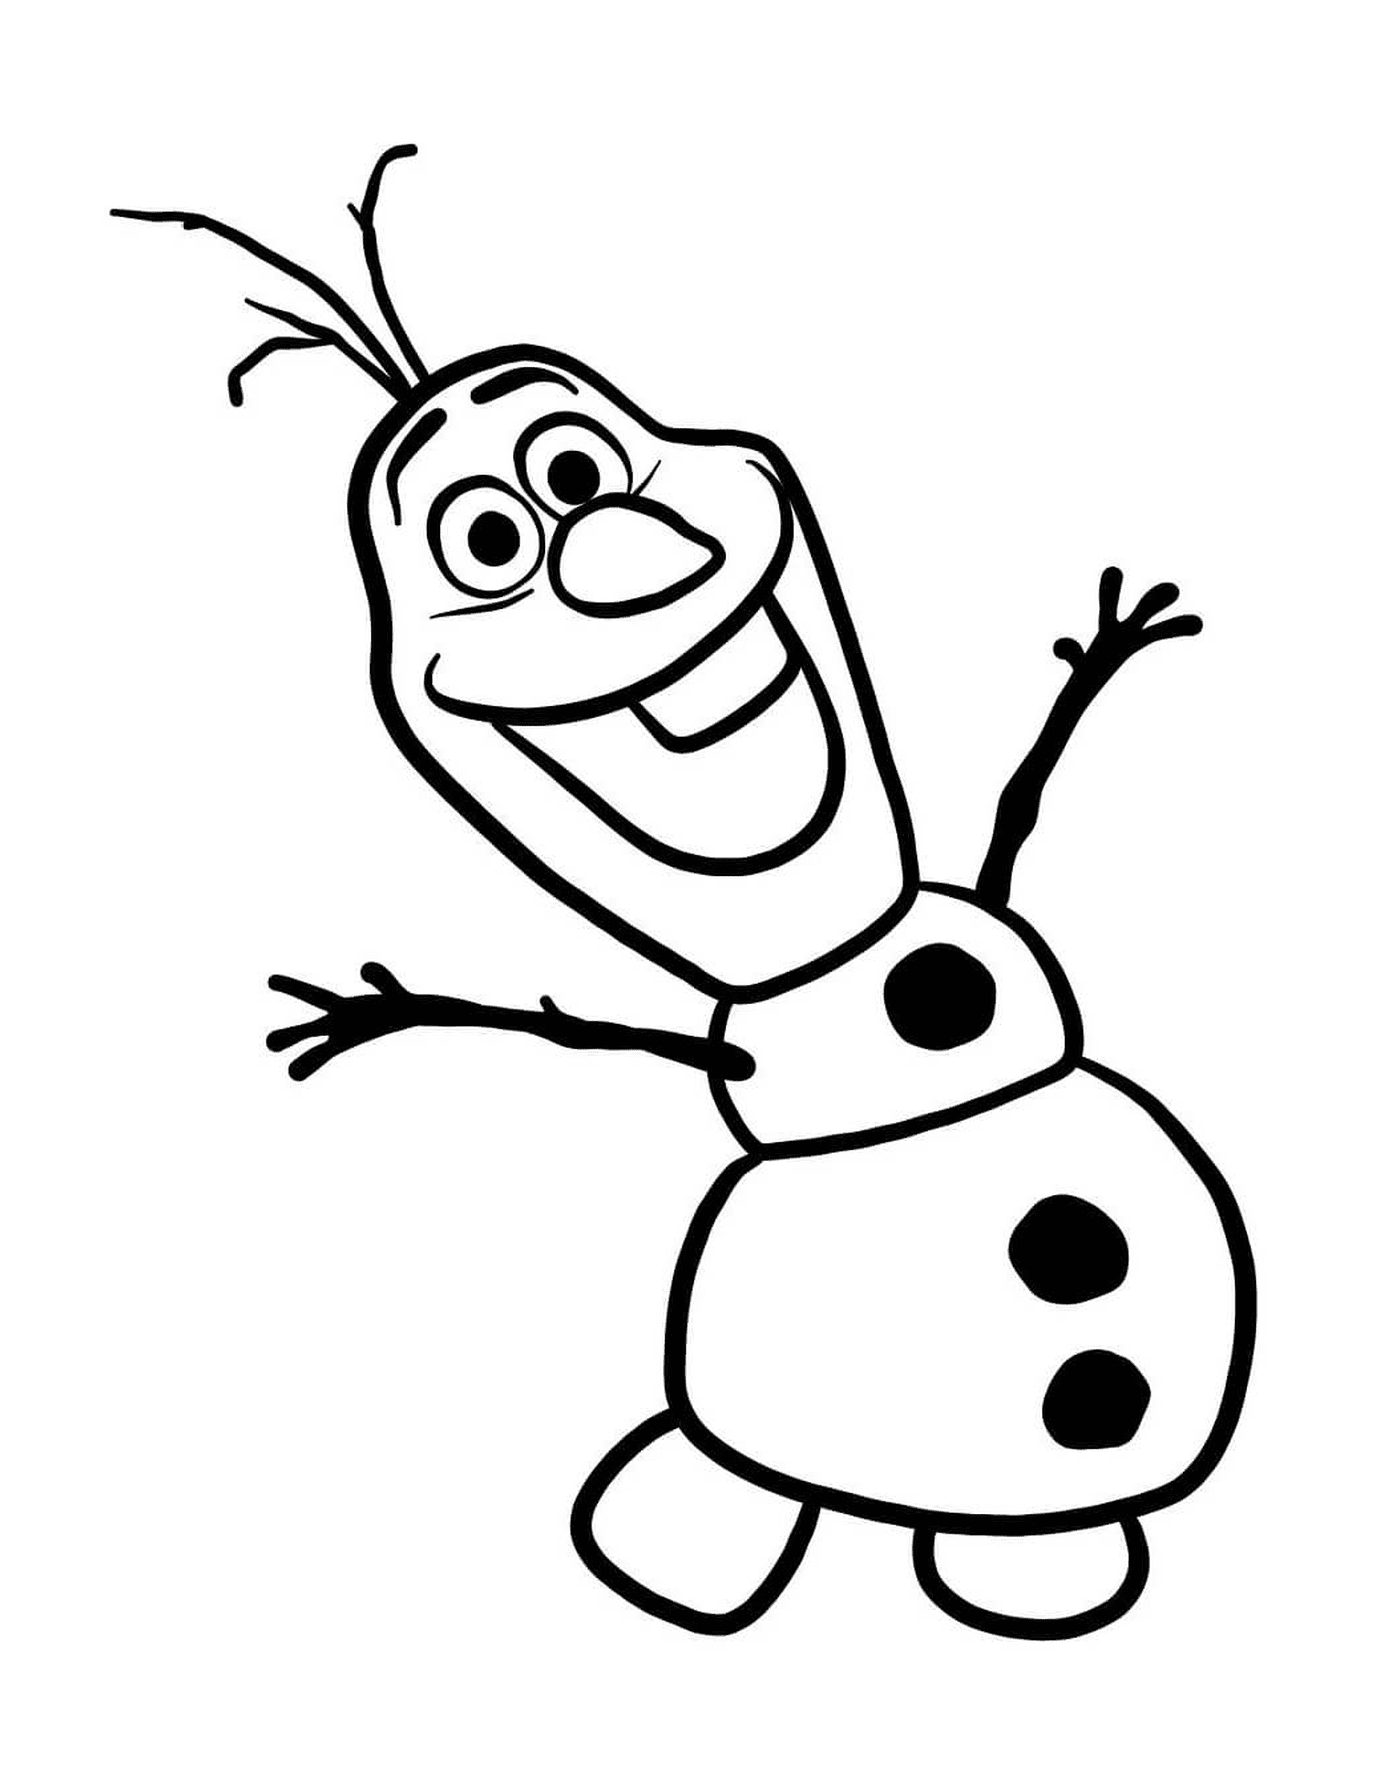  Olaf, the snowman created by Elsa 